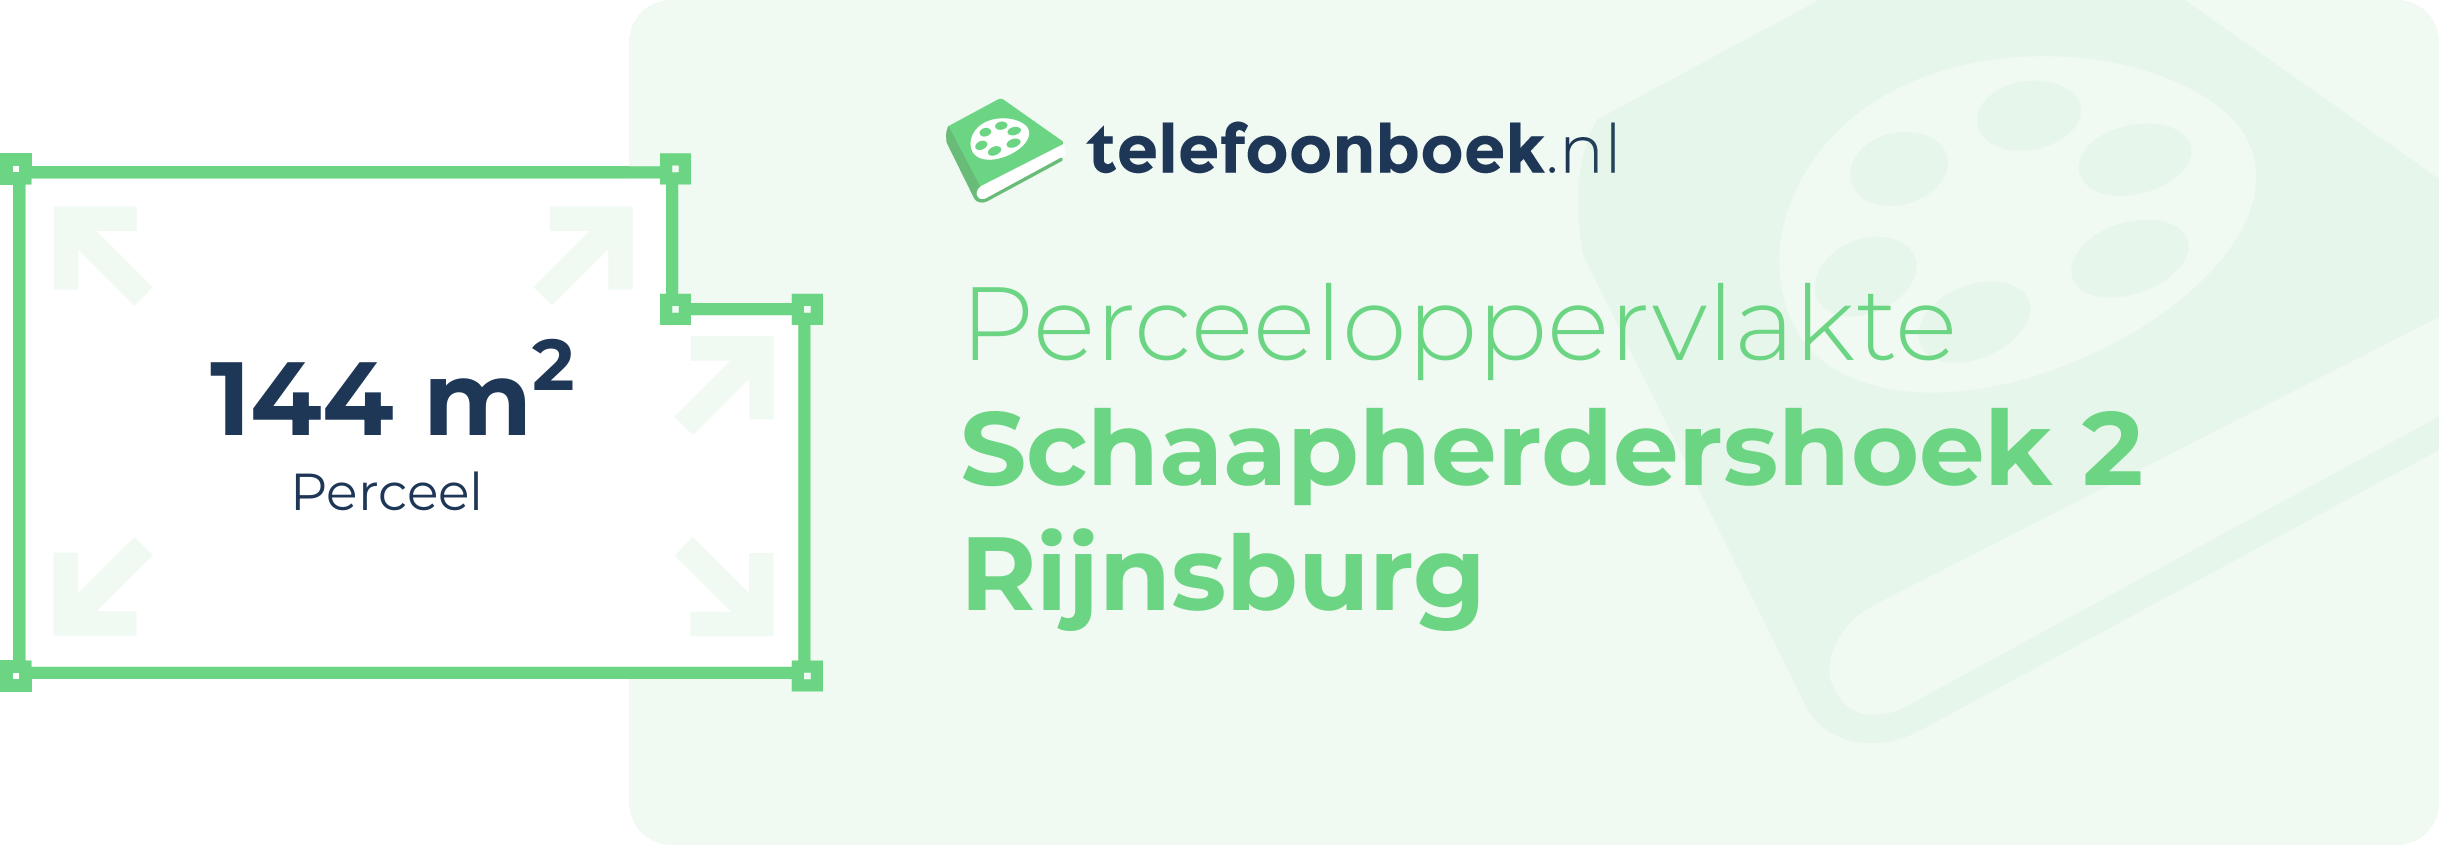 Perceeloppervlakte Schaapherdershoek 2 Rijnsburg